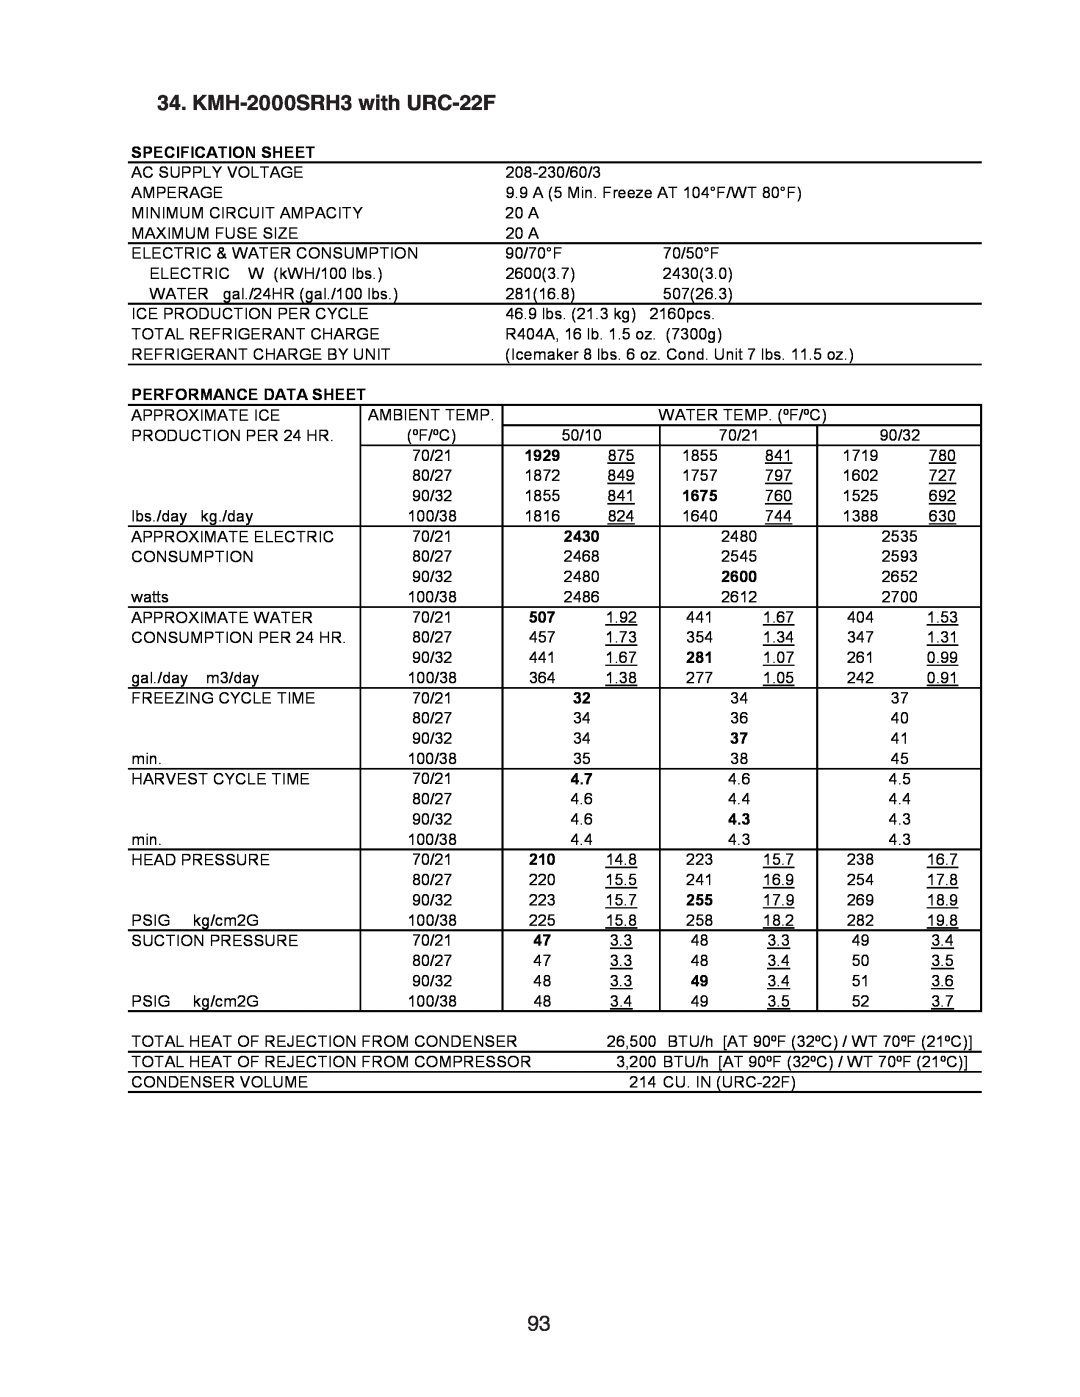 Hoshizaki SWH3-M KM-1601SAH/3, SRH/3, KM-1301SAH/3 KMH-2000SRH3 with URC-22F, Specification Sheet, Performance Data Sheet 